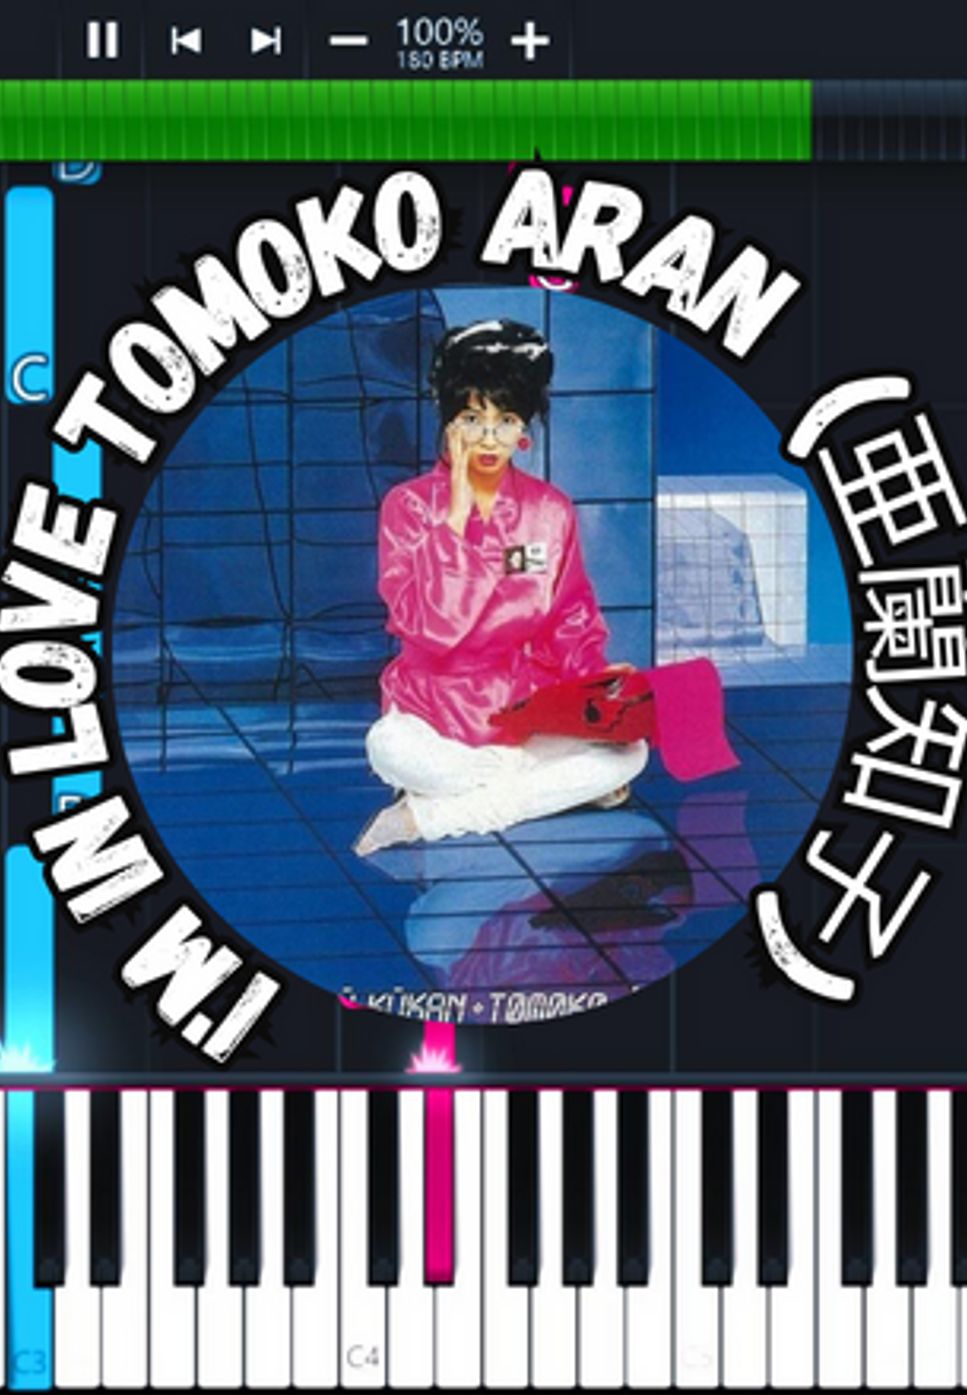 Tomoko Aran - I'm in Love by Marco D.